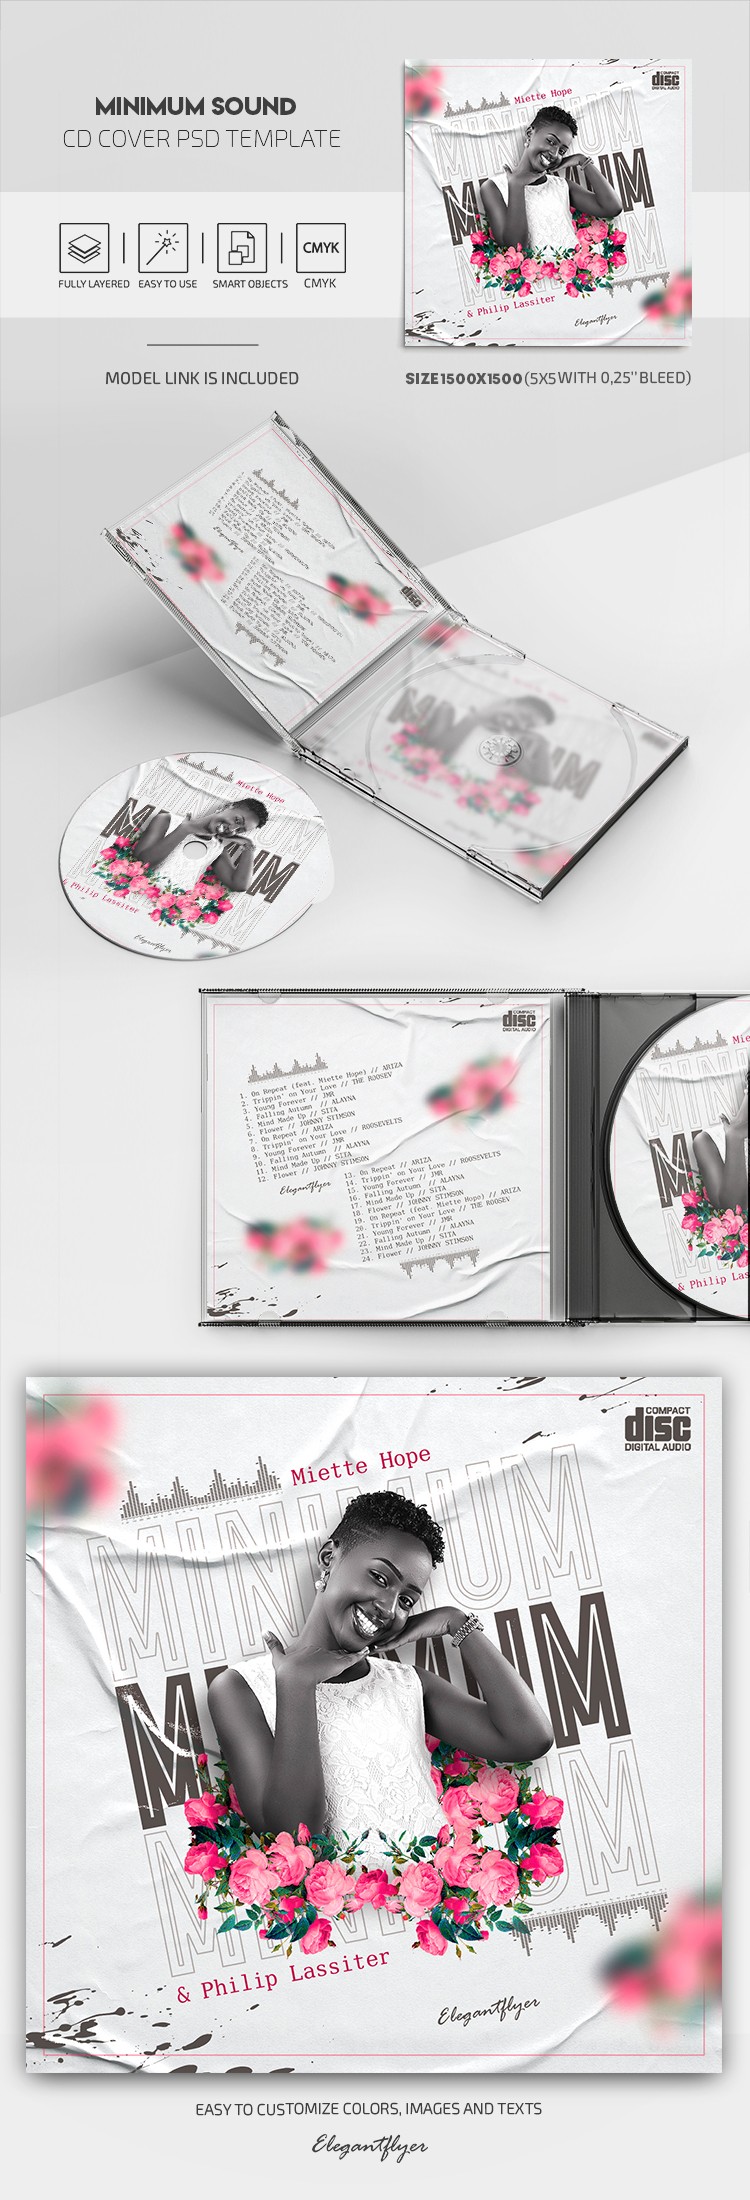 最低音量CD封面 by ElegantFlyer